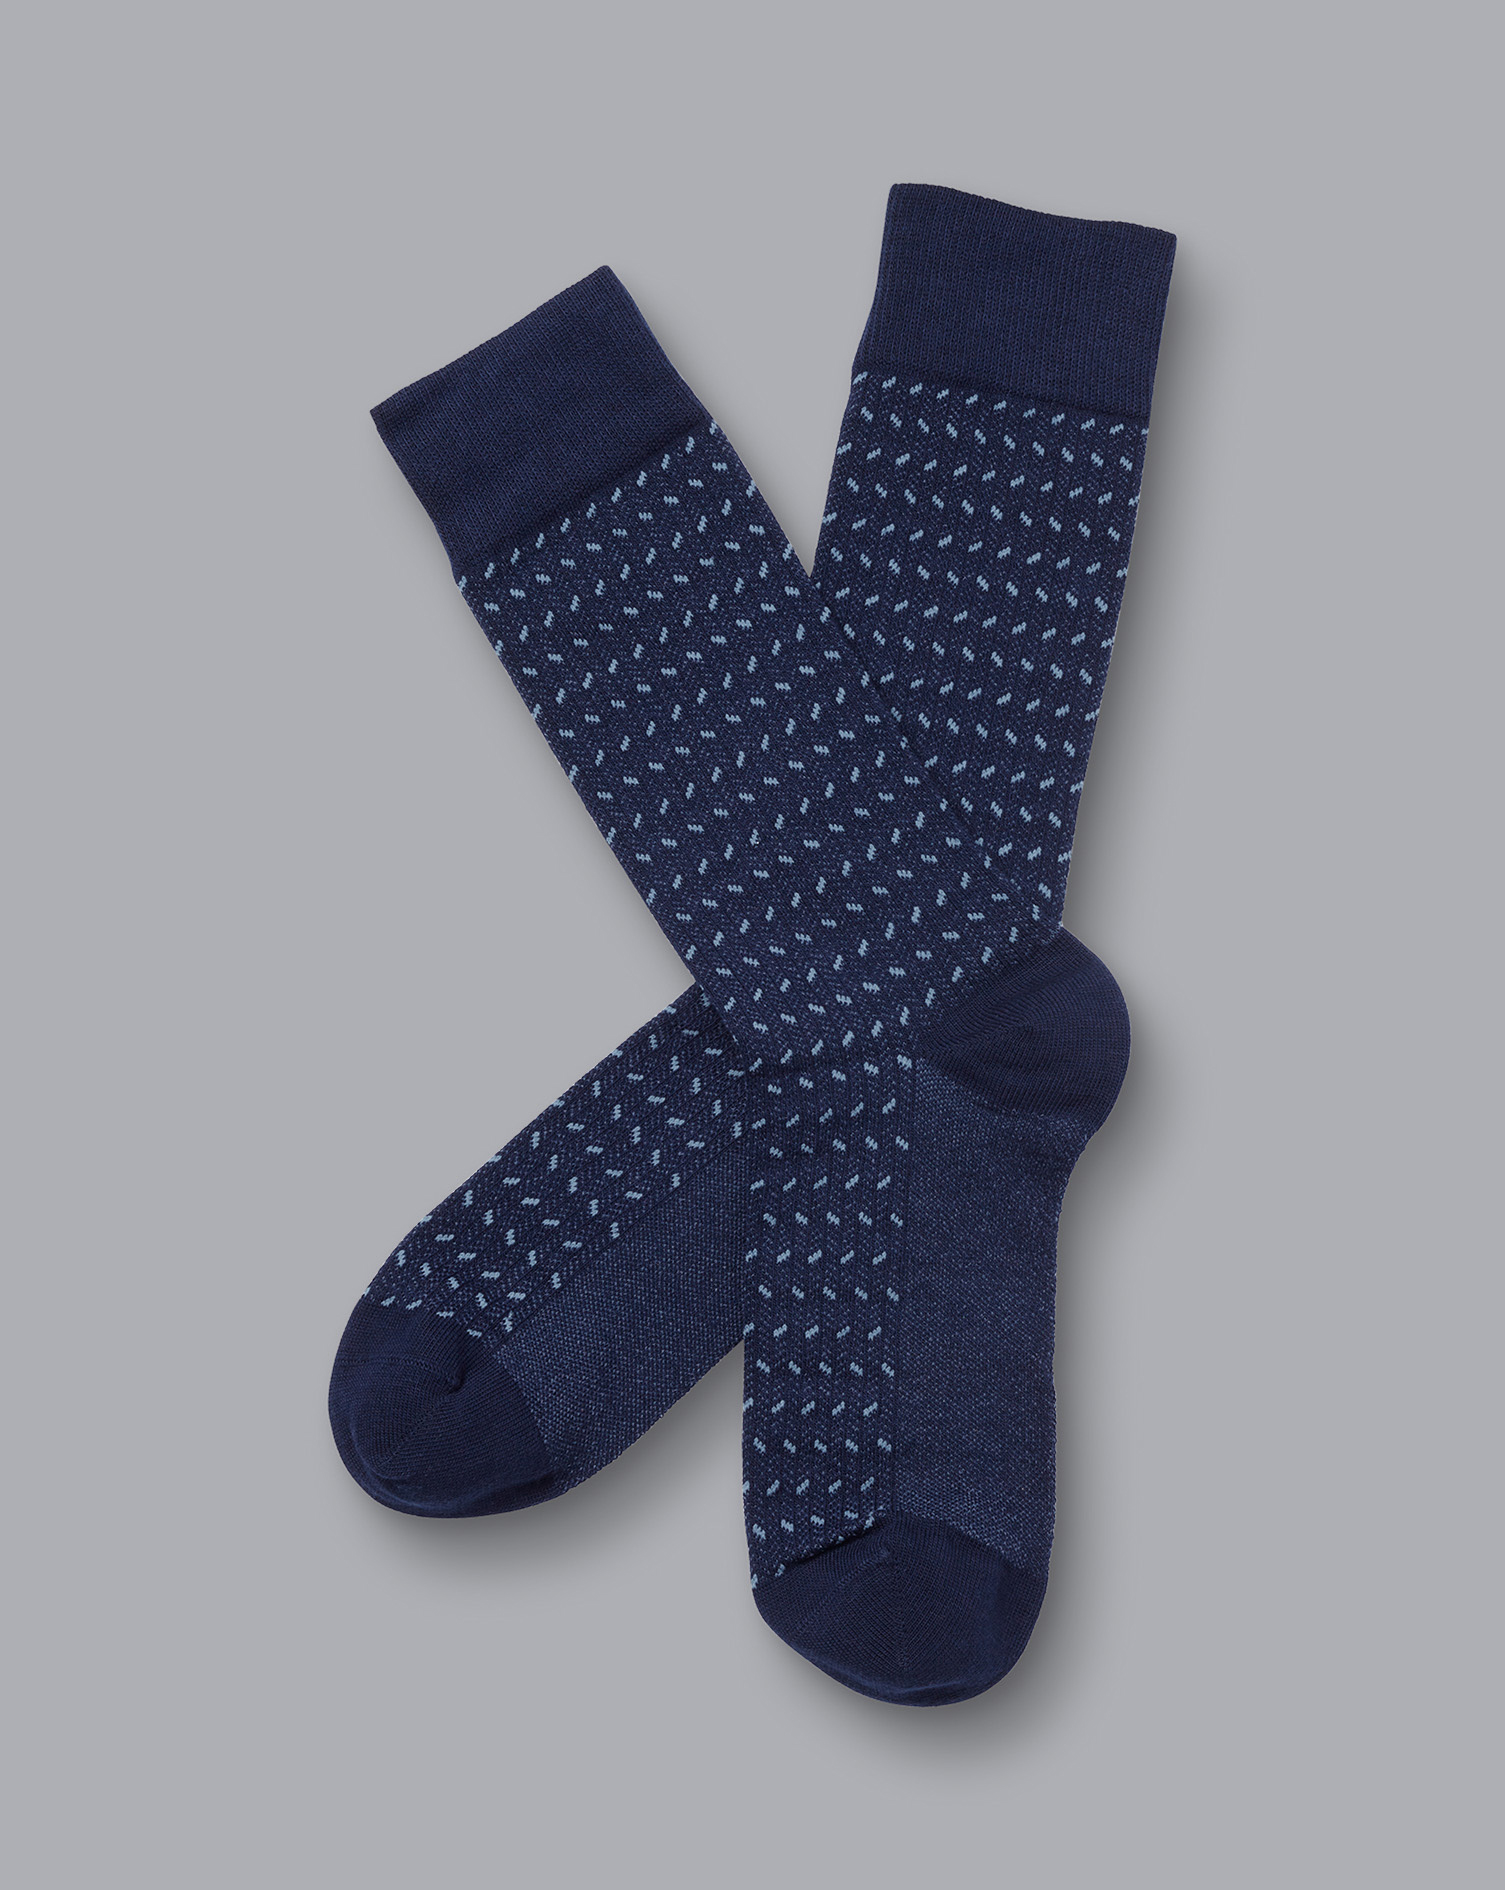 Men's Charles Tyrwhitt Mini Herringbone Socks - Denim Blue Size Medium Cotton
